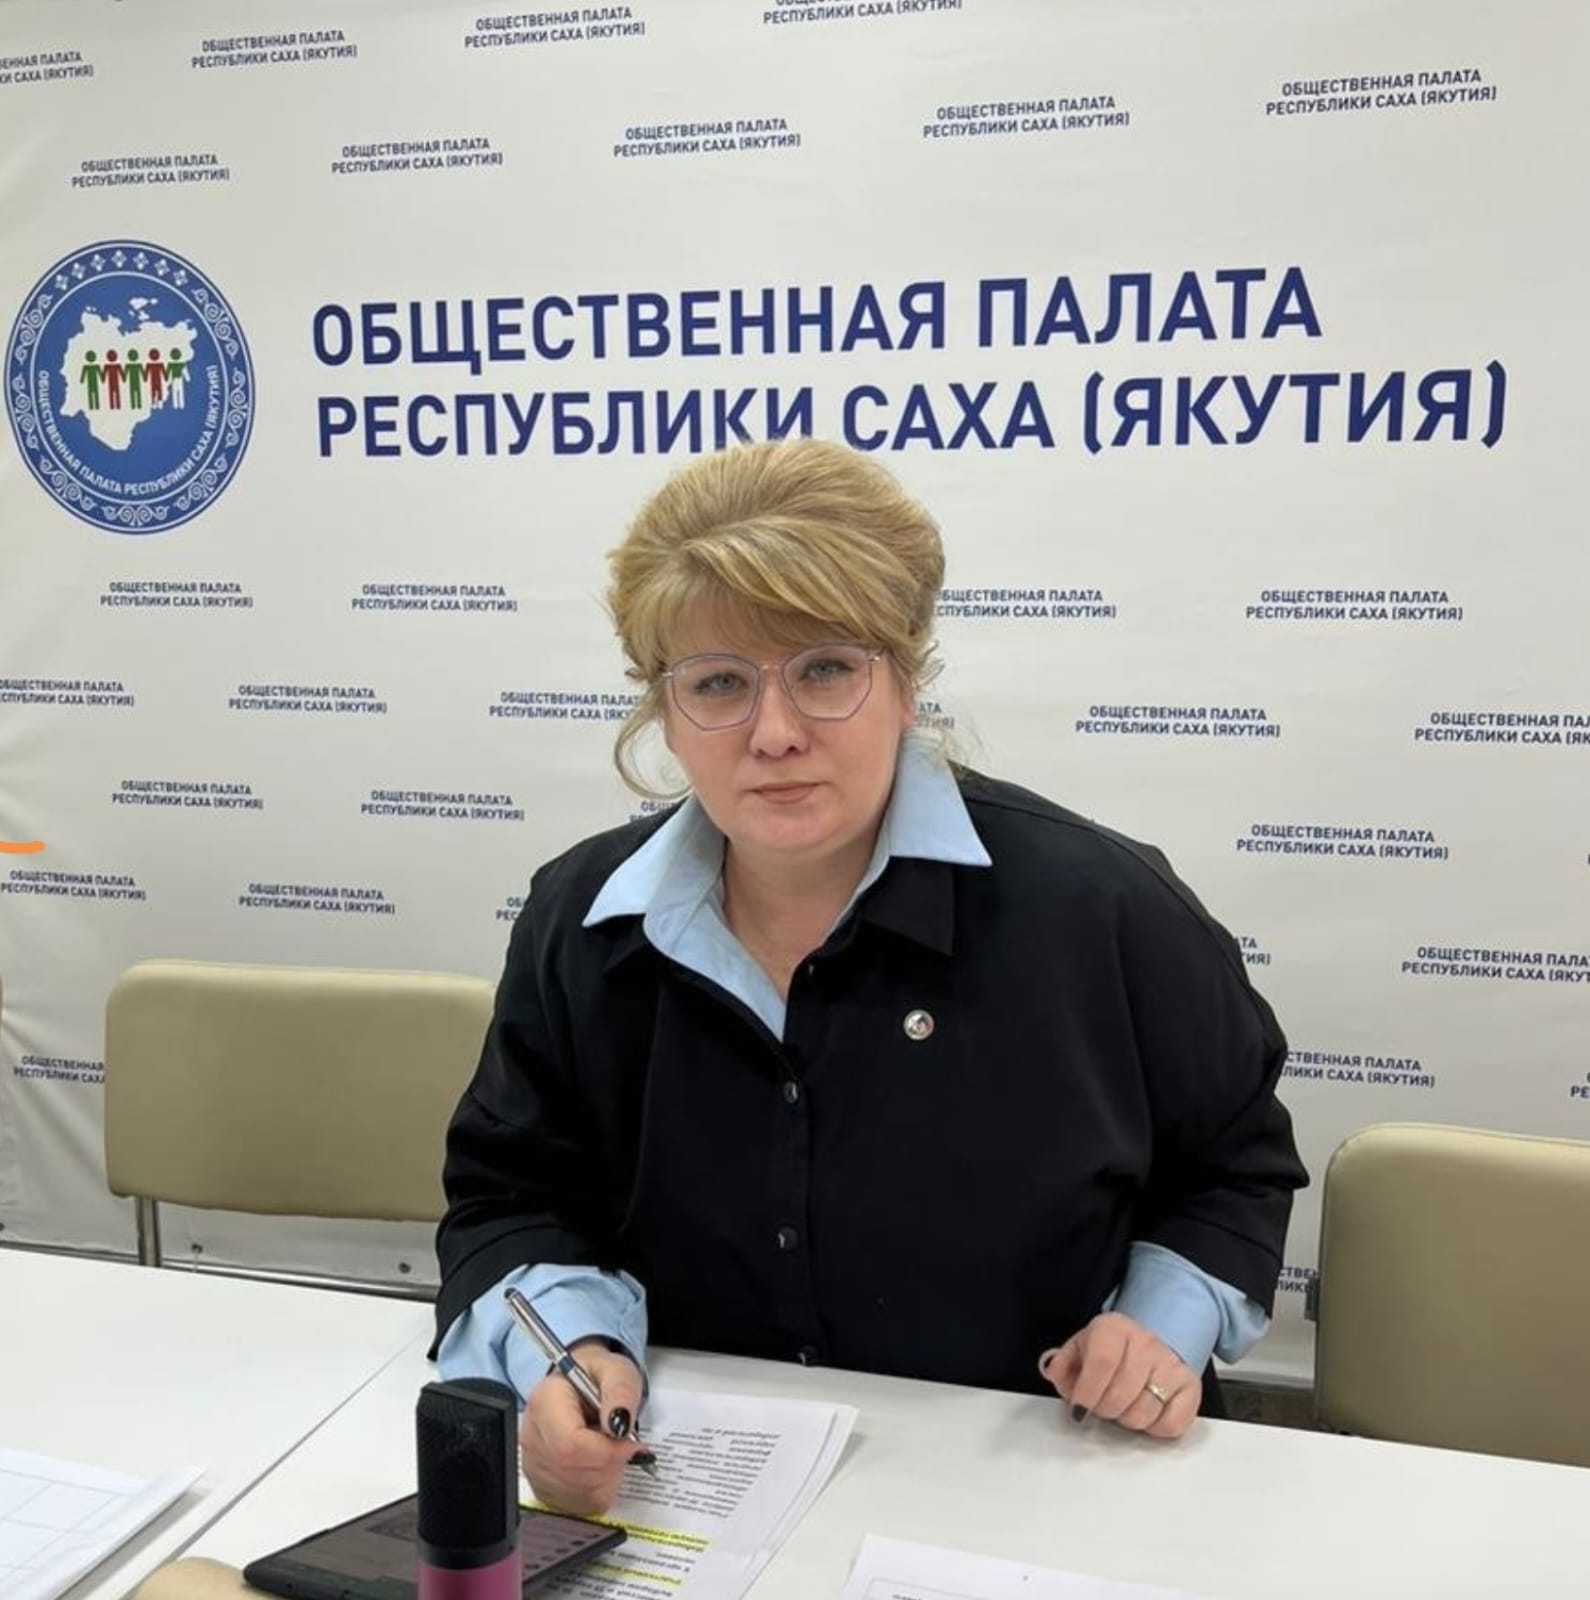 Наталья Кашперская поддержала решение Владимира Путина баллотироваться в президенты